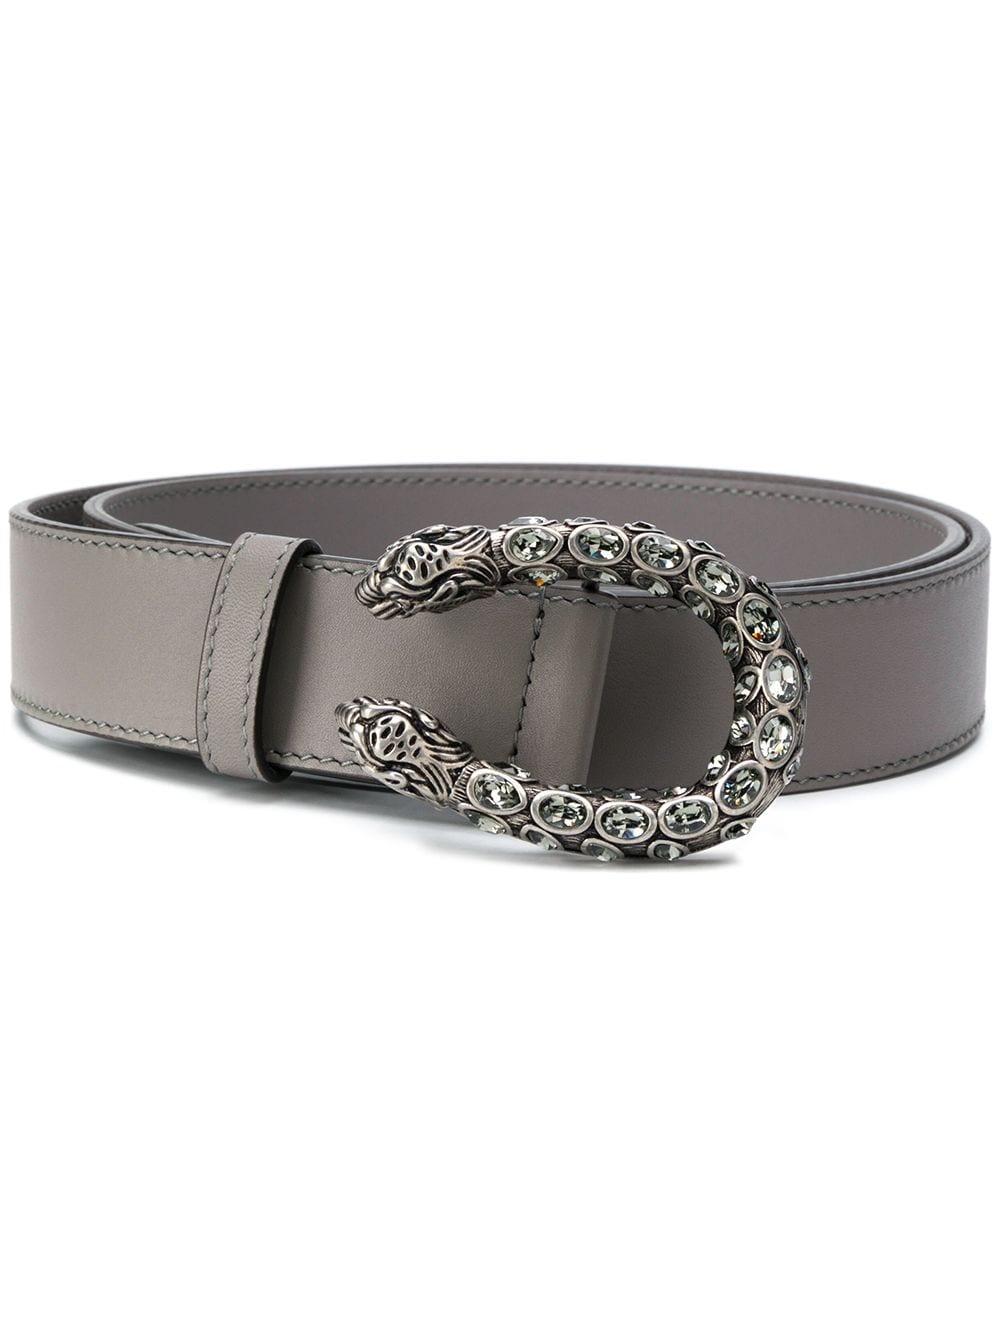 Gucci Crystal Dionysus Buckle Belt in Grey (Gray) - Lyst